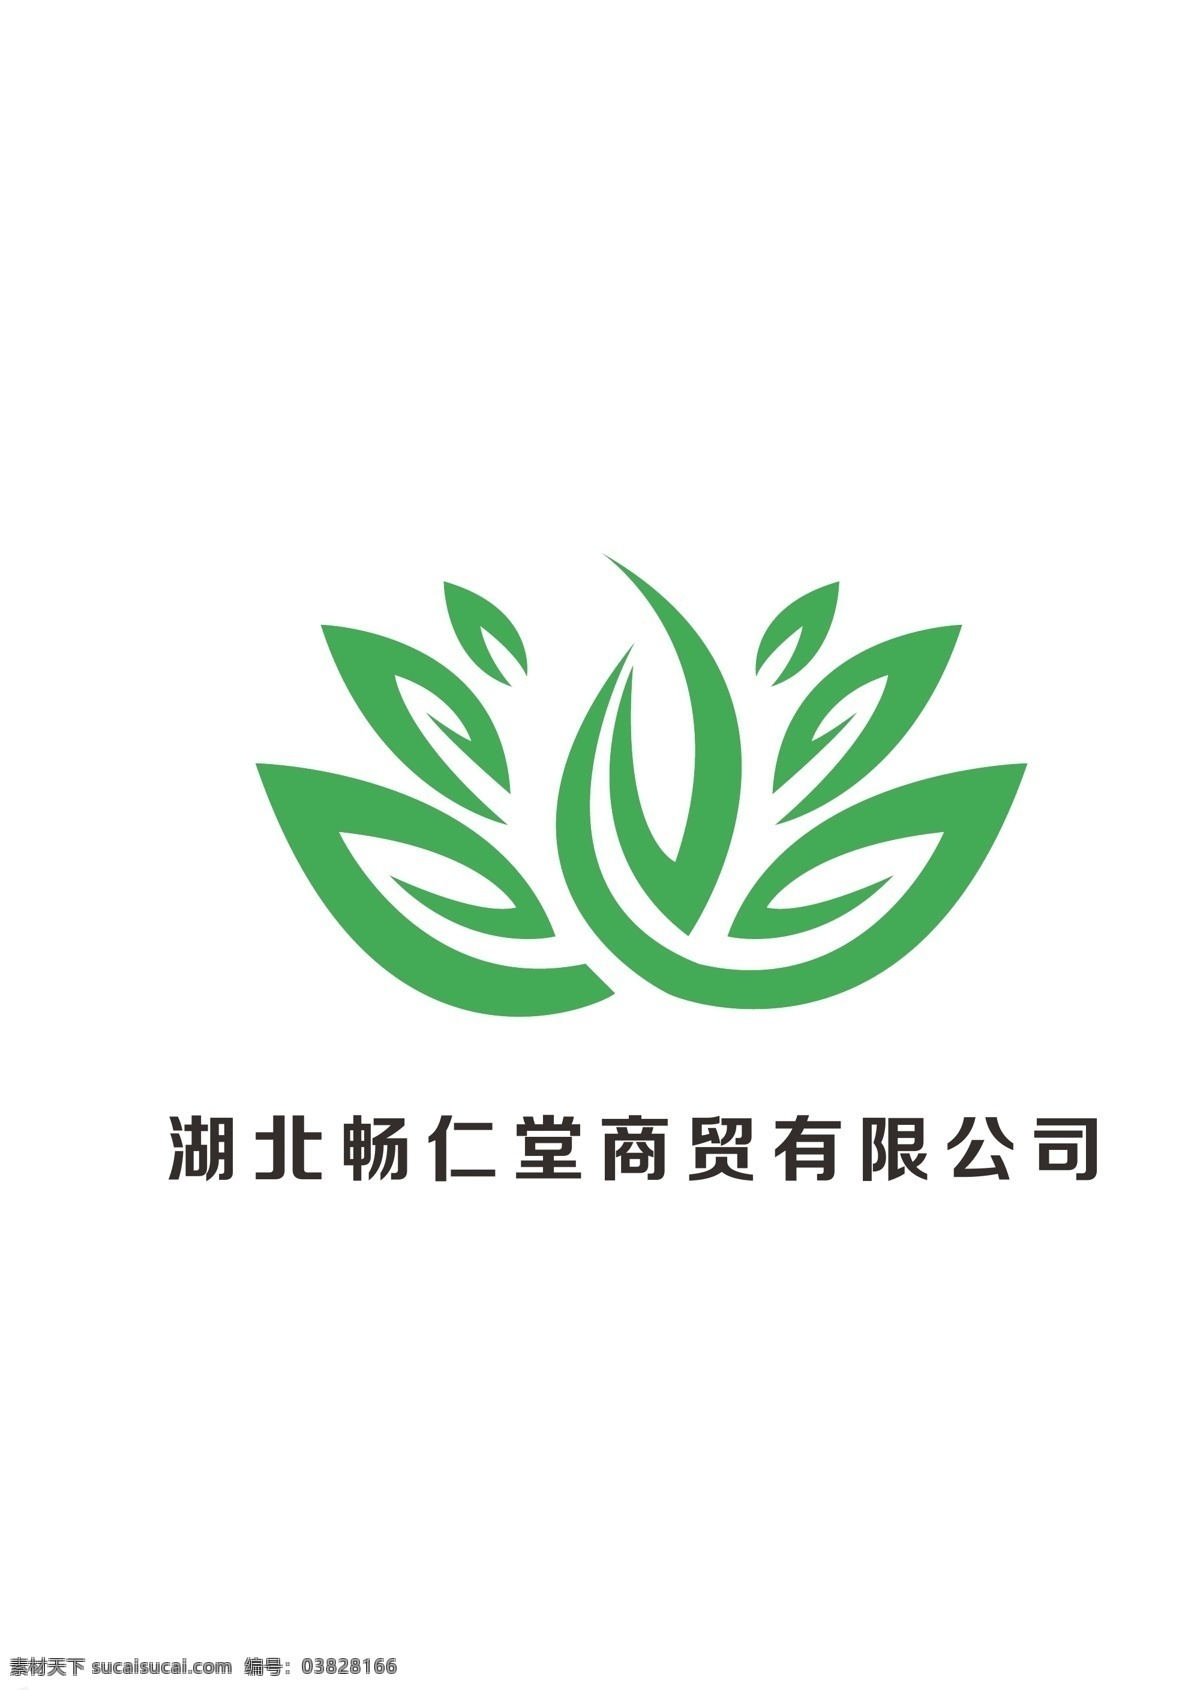 中医 馆 图标 古风 国风 抽象化设计 传统 高端 大气 药材 标志图标 企业 logo 标志